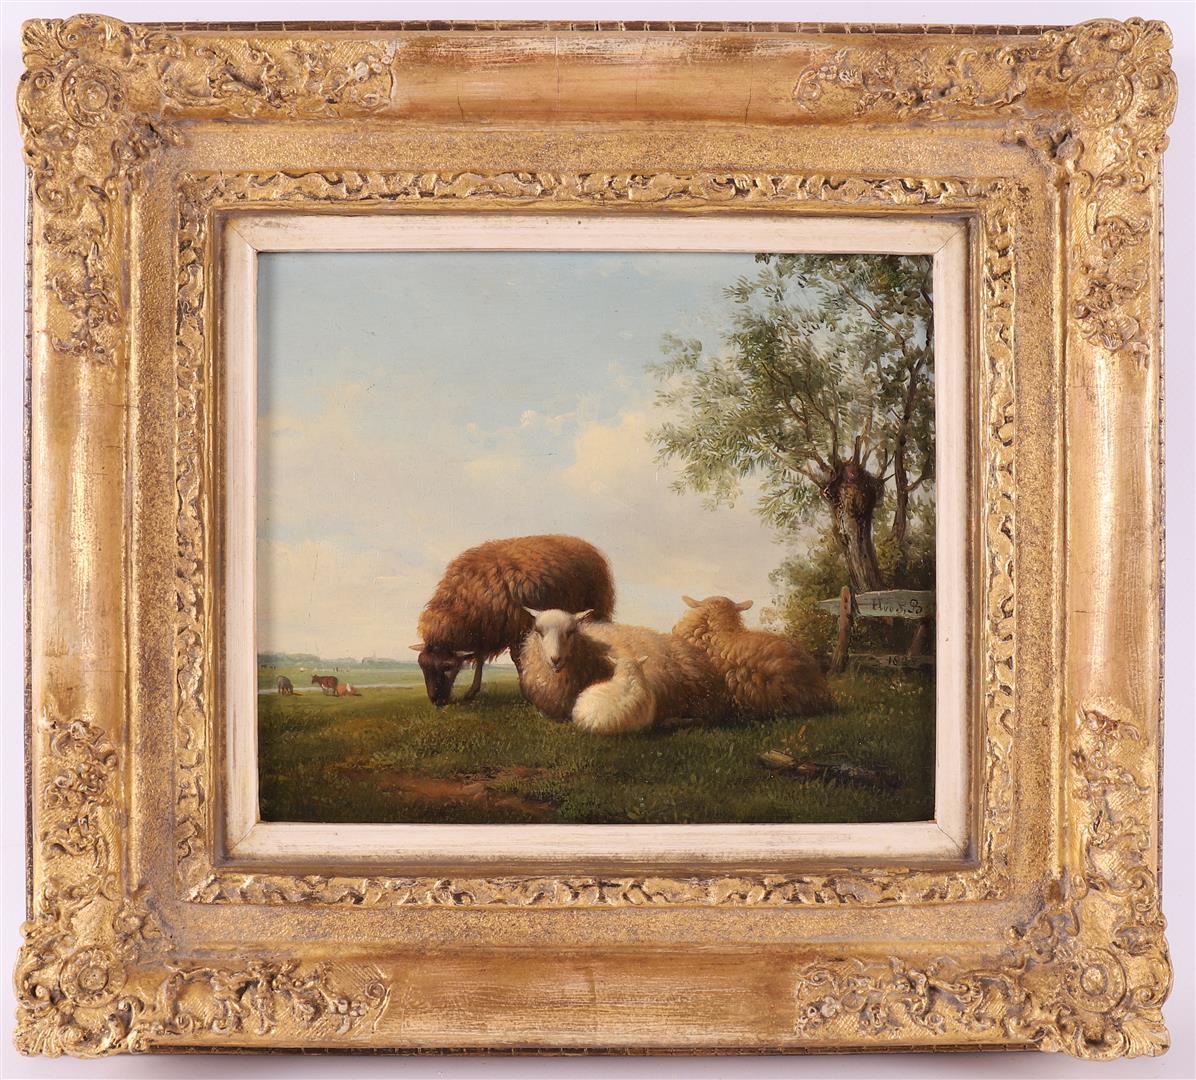 Bakhuijzen Sande van de, Hendrikus (1795-1860) 'Sheep at a fence',